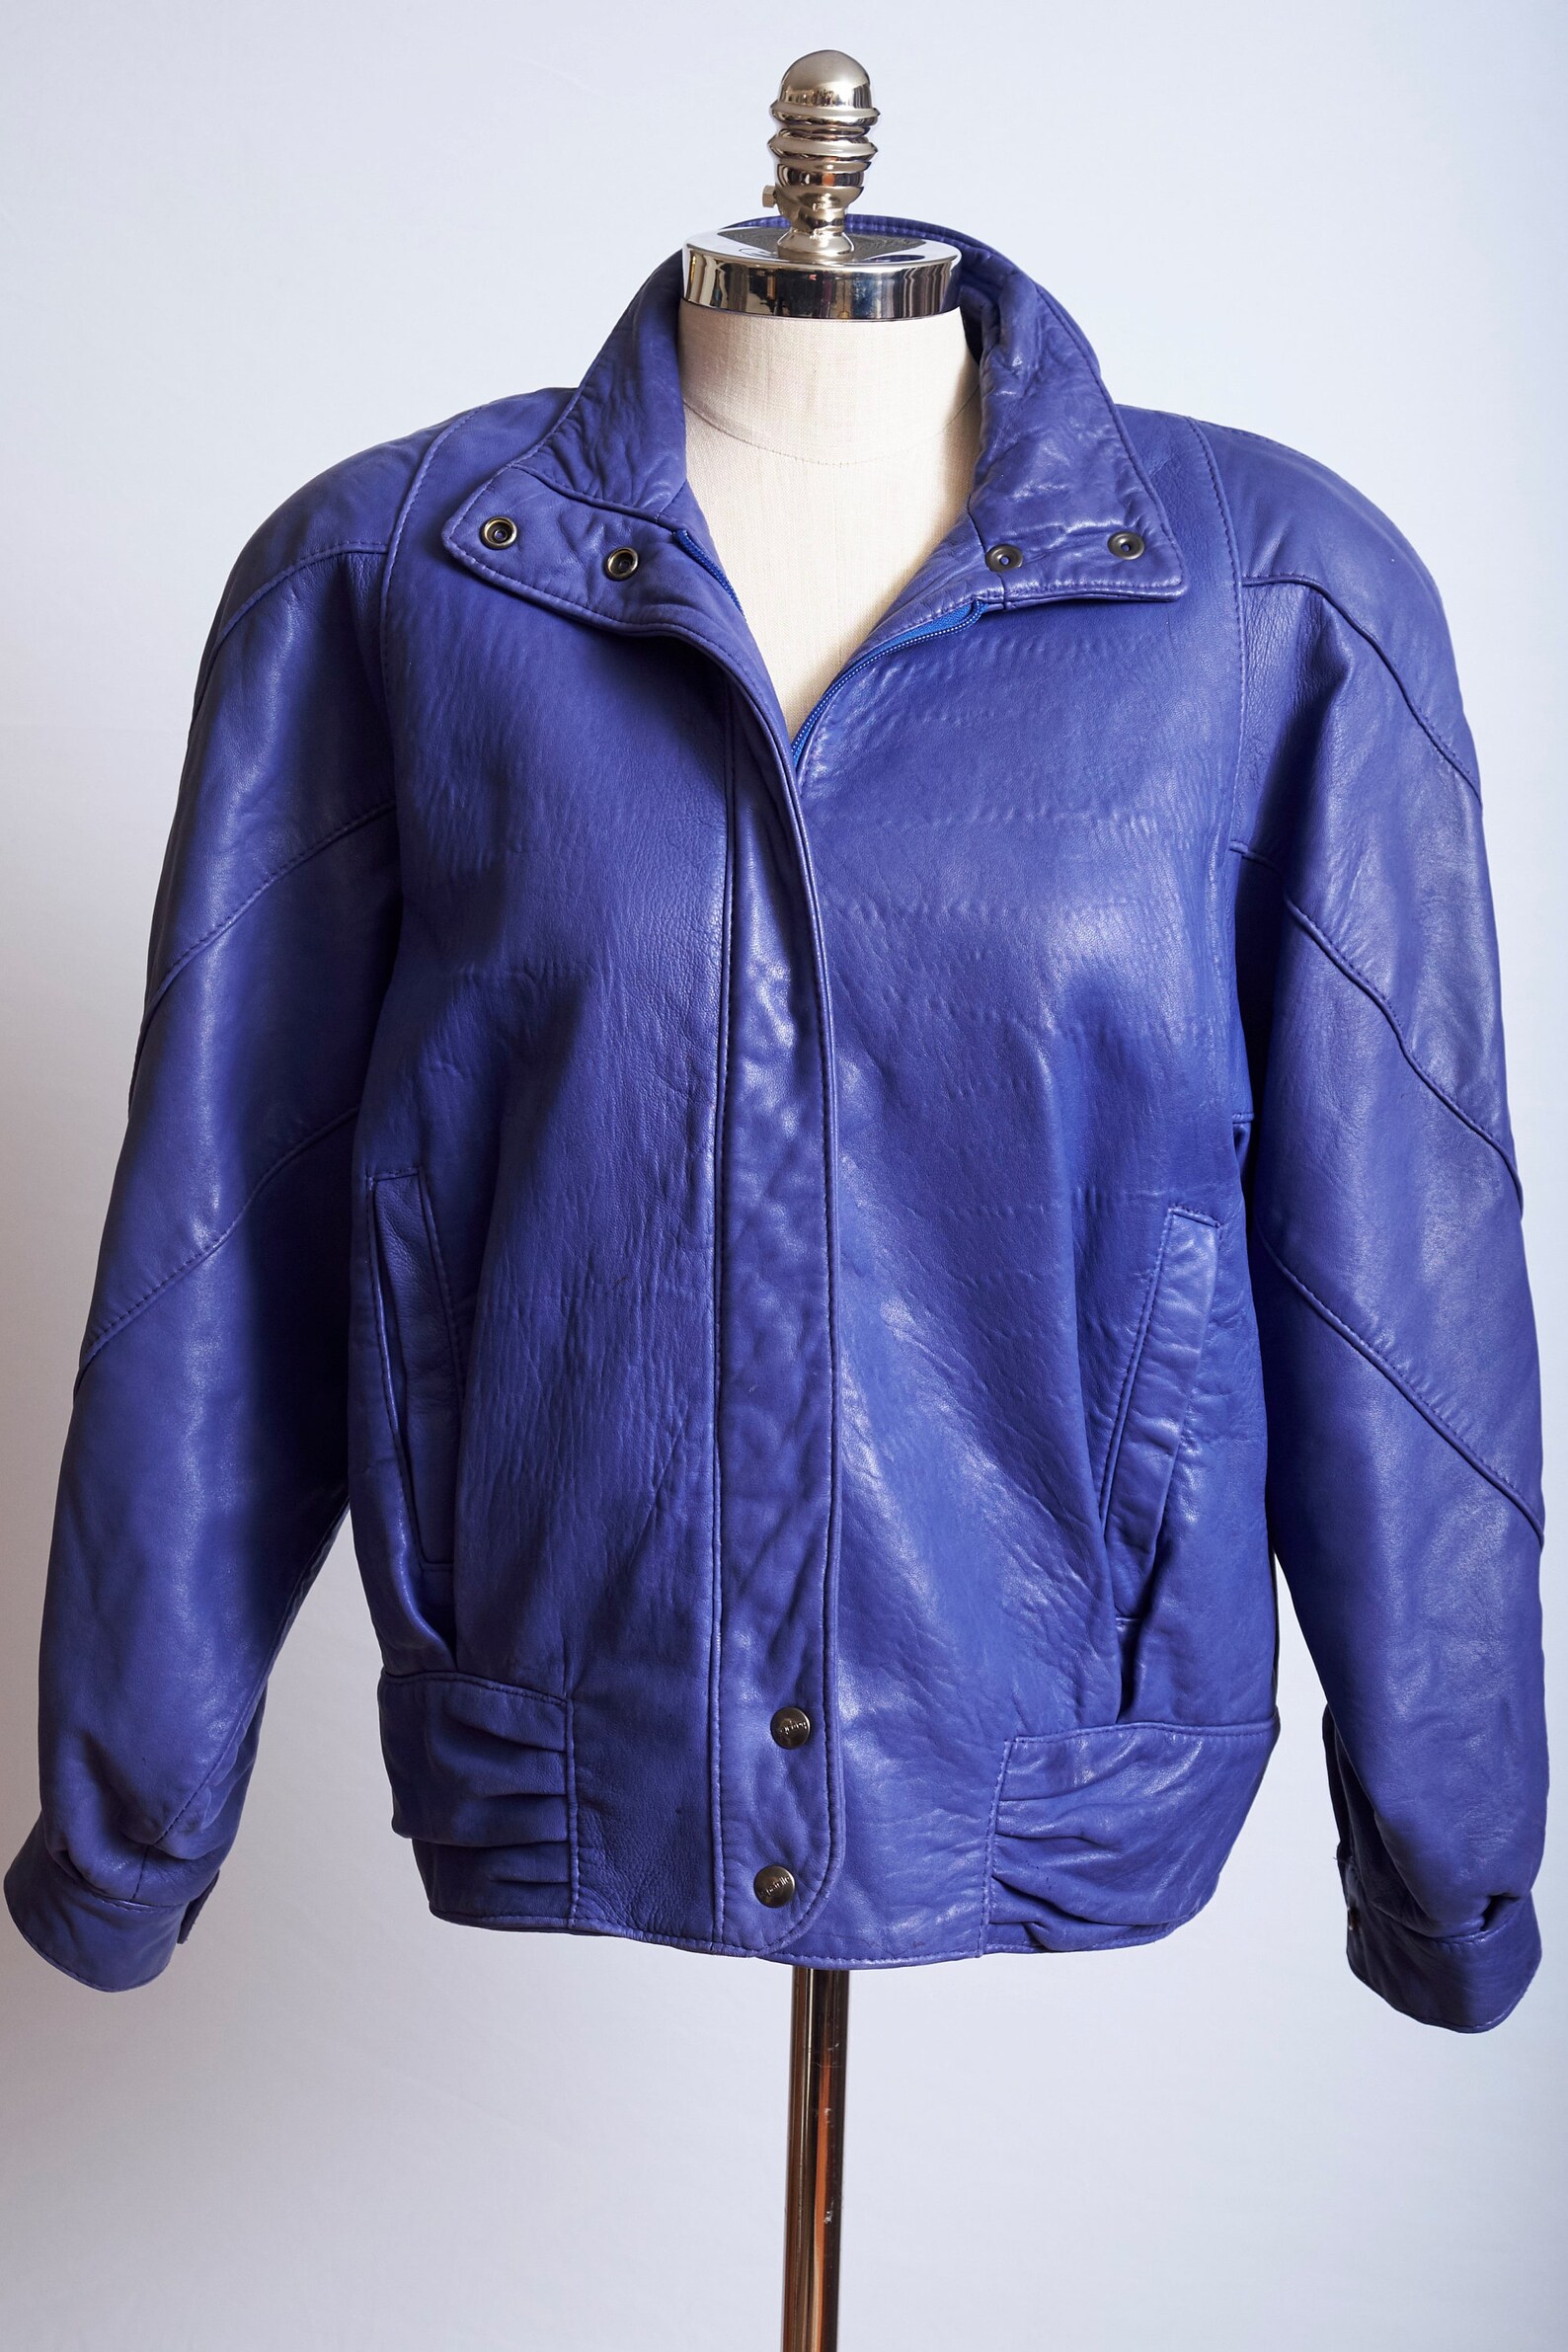 Vintage 80s blue leather bomber jacket oversized long sleeve | Etsy